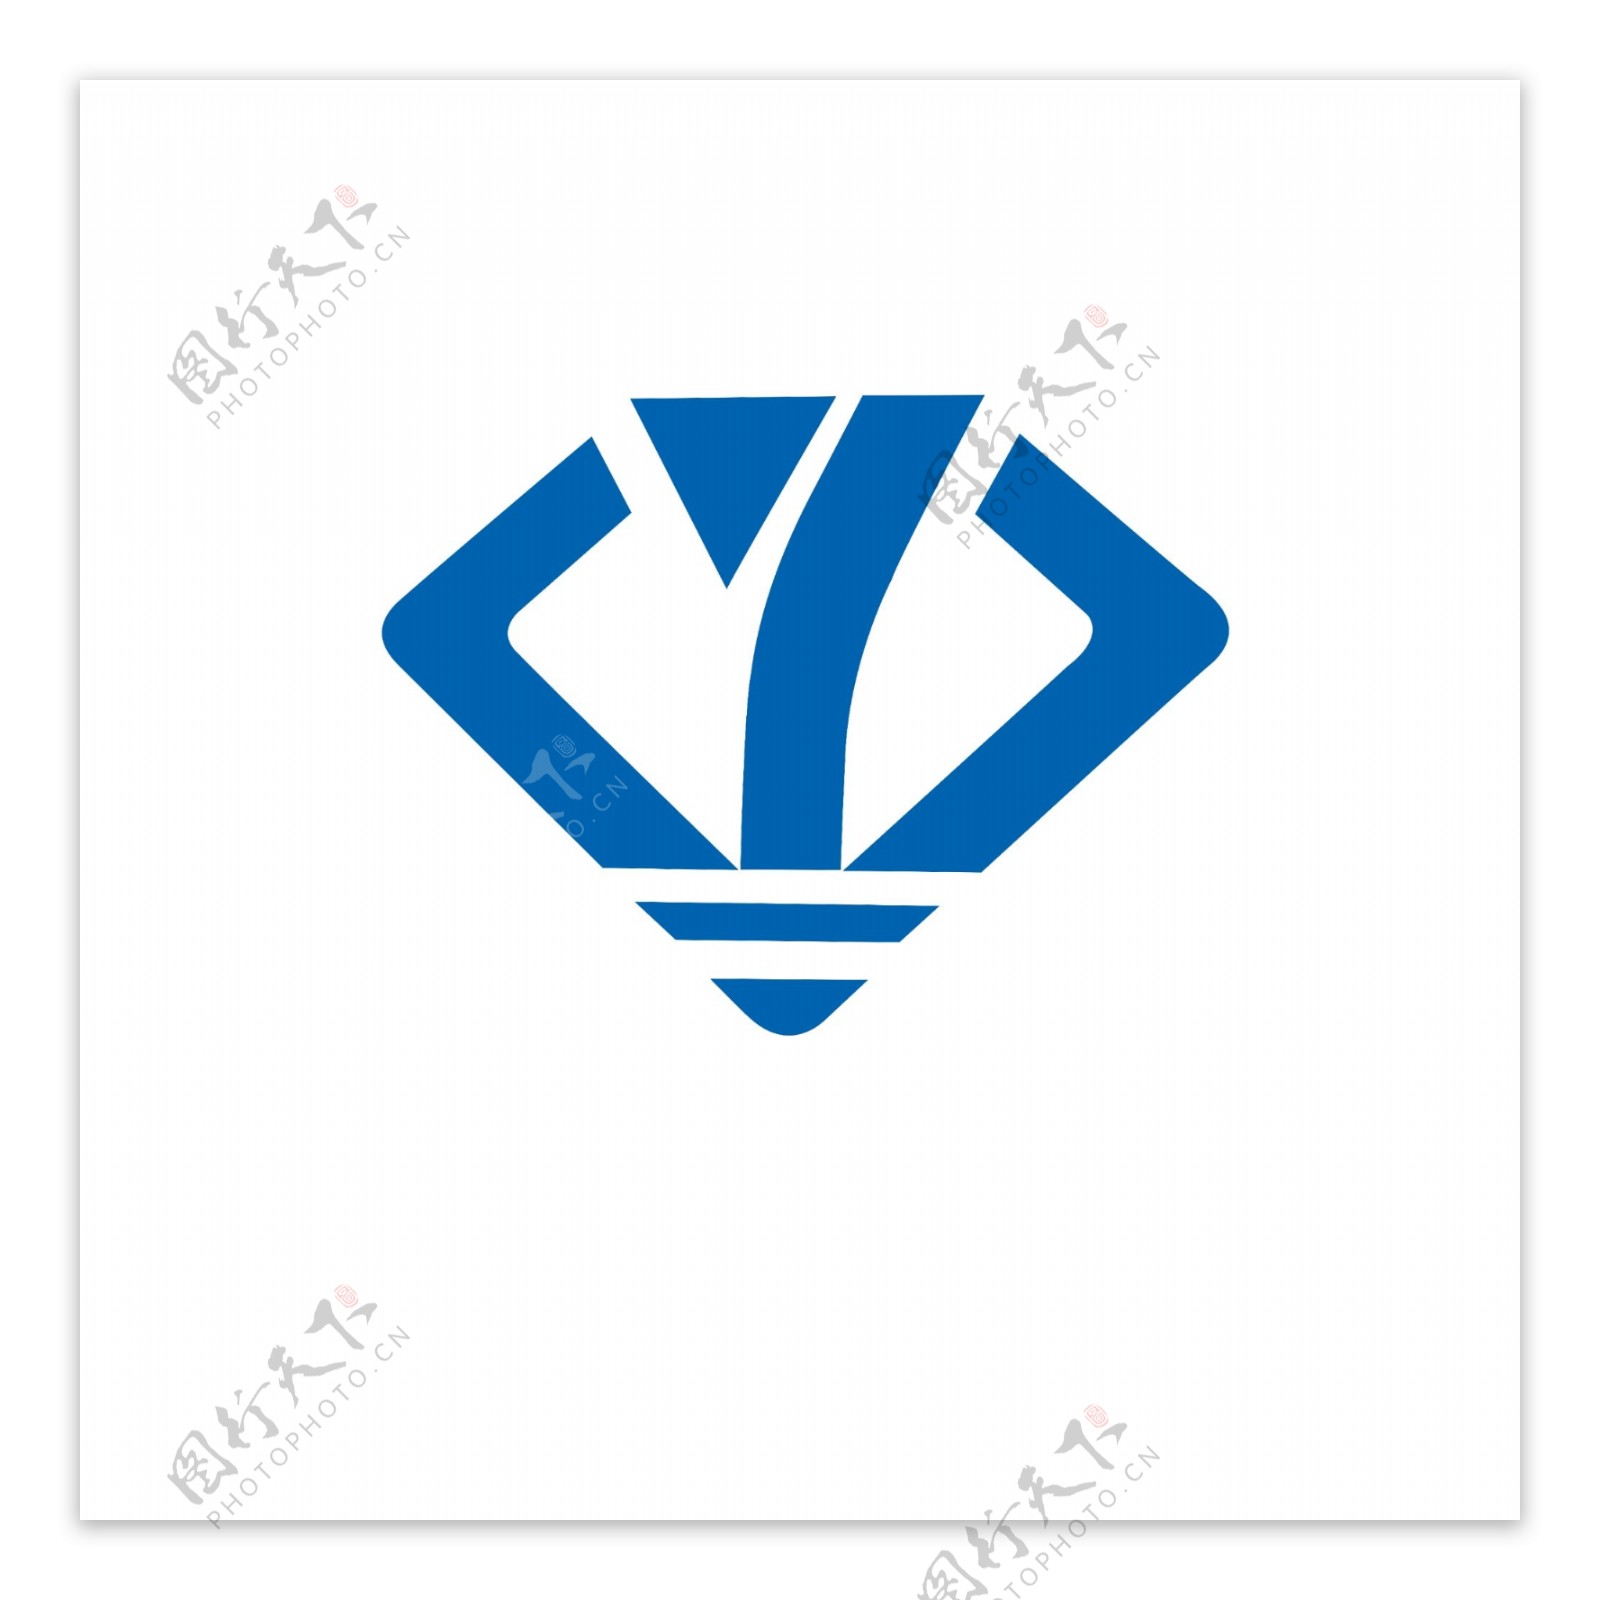 砼宇logo源文件蓝色主题设计